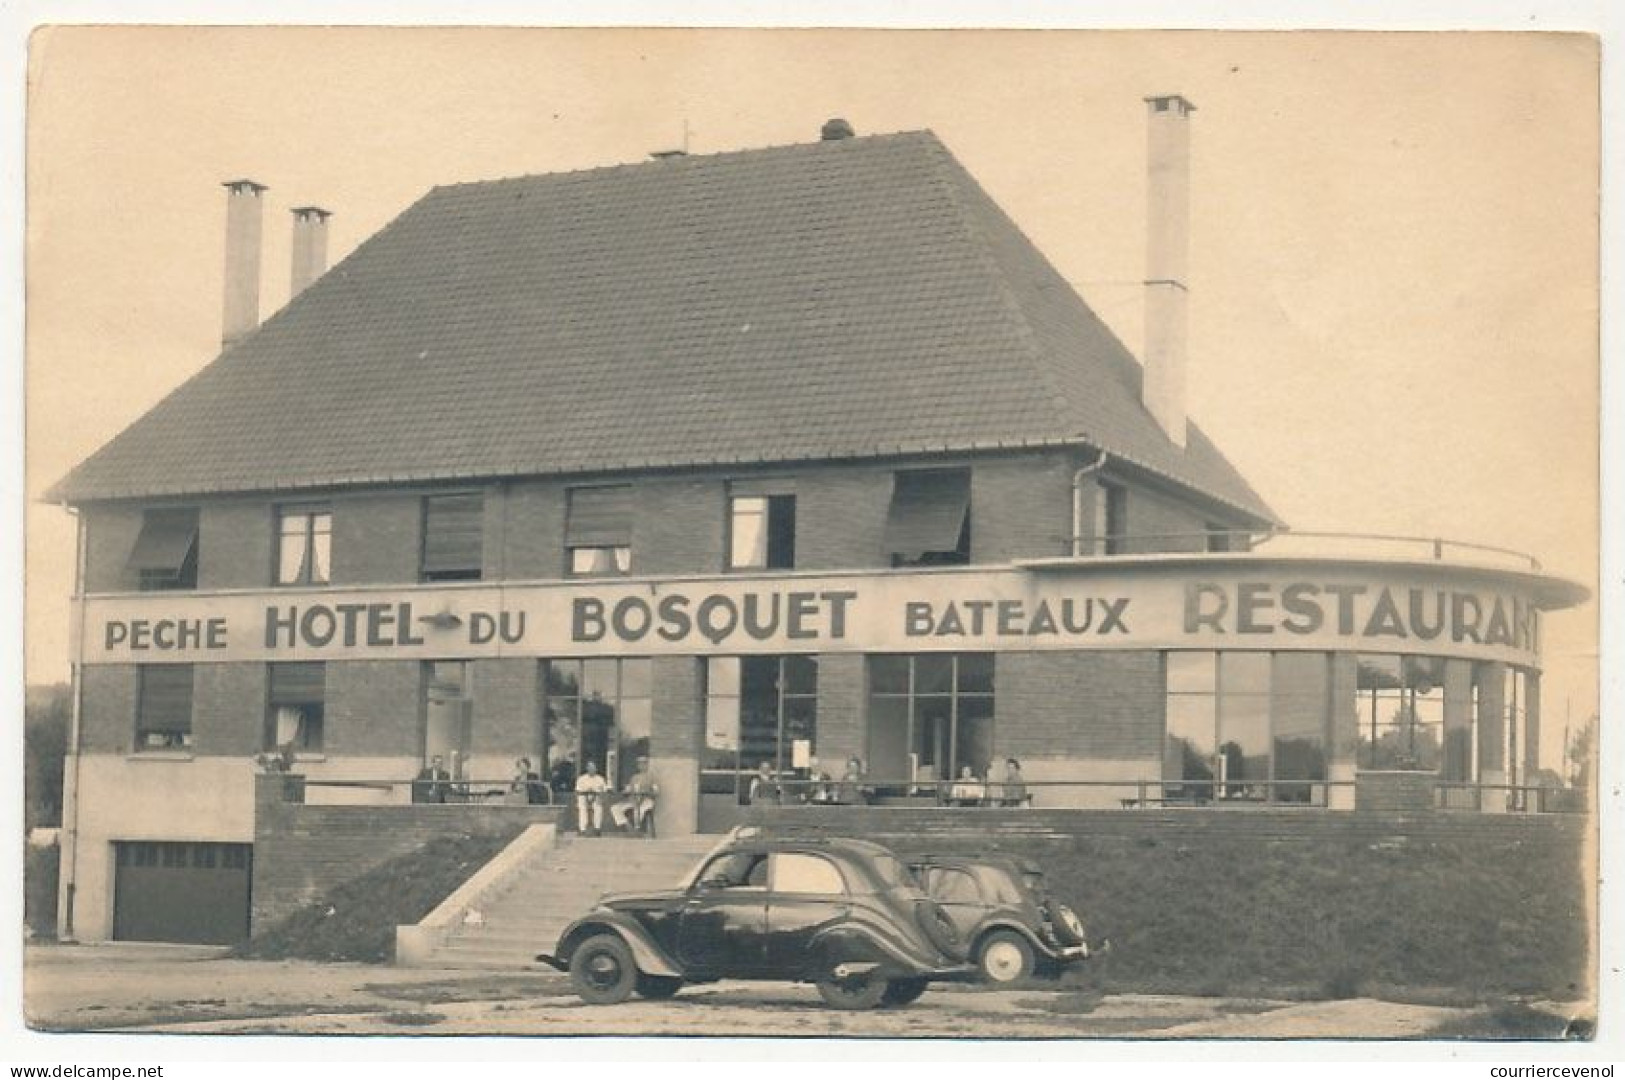 CPA - LONGPRE-LES-CORPS-SAINTS (Somme) - Café Du Bosquet C.Chevelu + Photo Hôtel Du Bosquet - Sonstige & Ohne Zuordnung